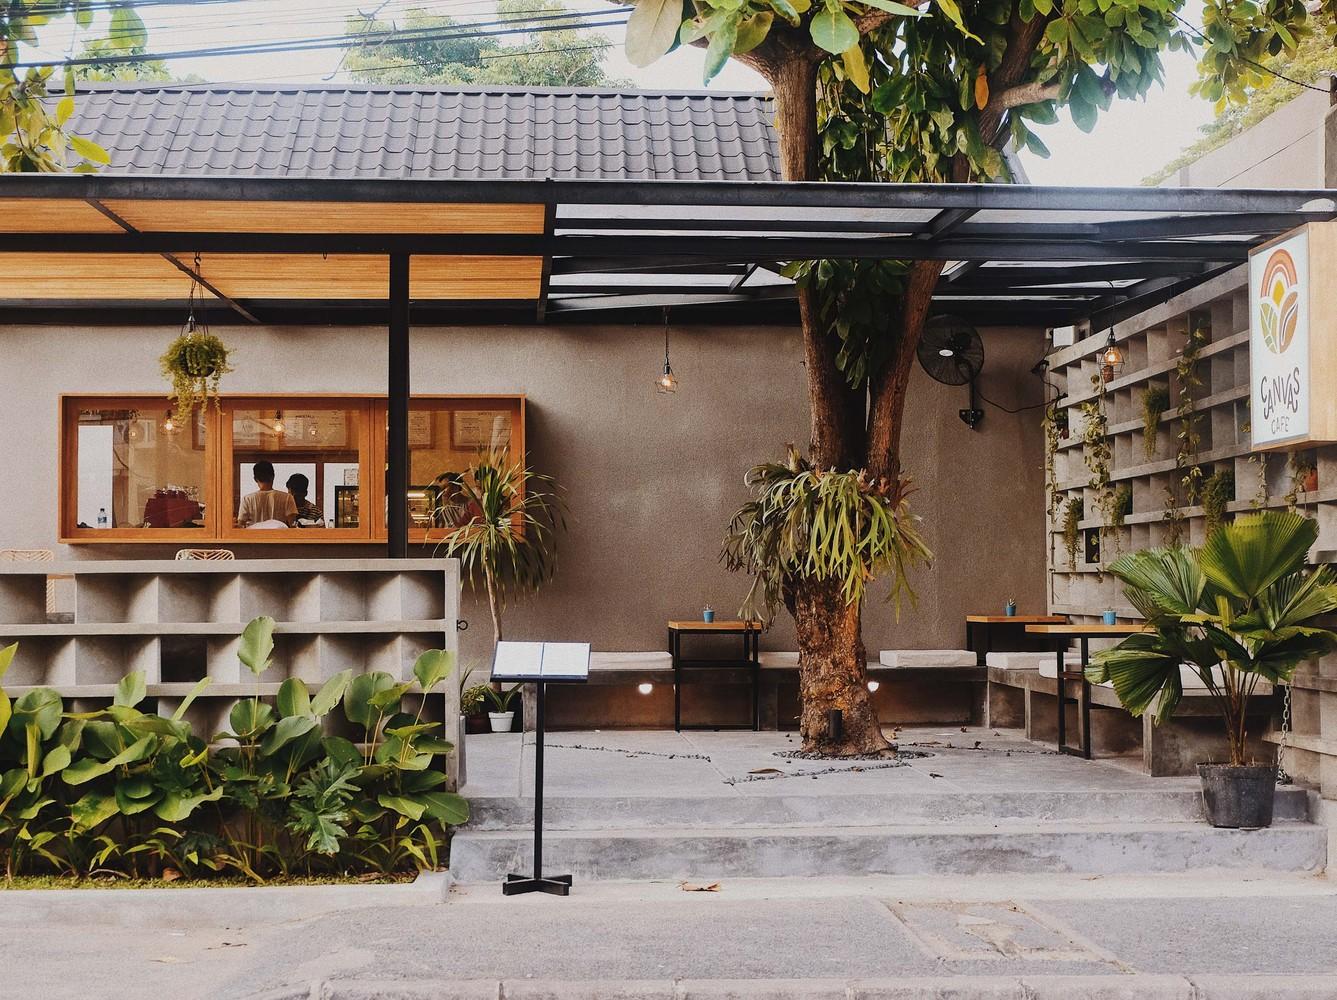 【印尼峇里悠閒好去處】全新現代熱帶咖啡店 設計寫意又充滿活力